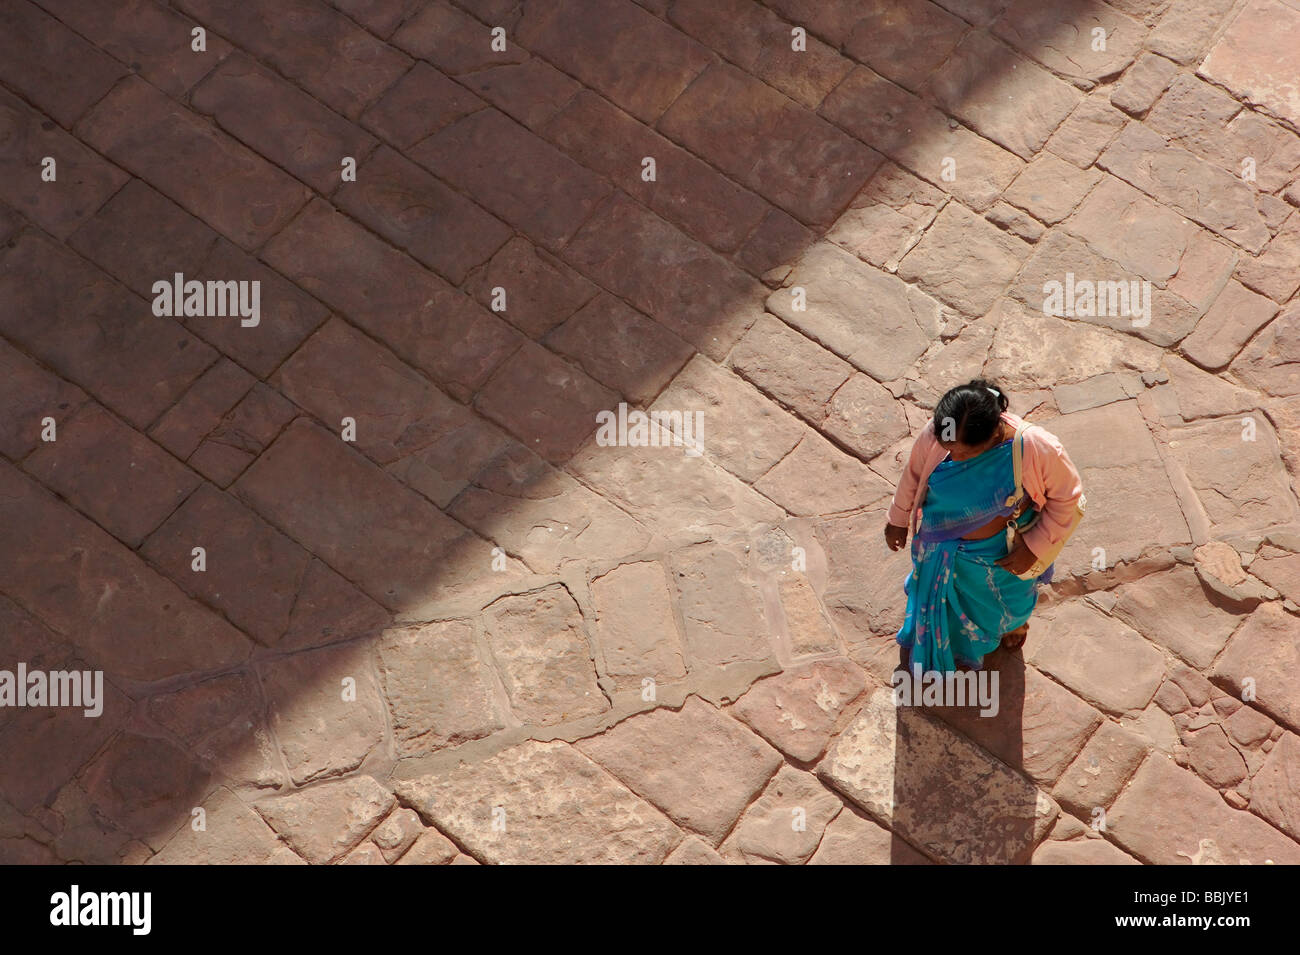 Frau im Innenhof befindet sich Mehrangarh Fort in Jodhpur-Stadt in Rajasthan State ist eine der größten Festungen in Indien Stockfoto